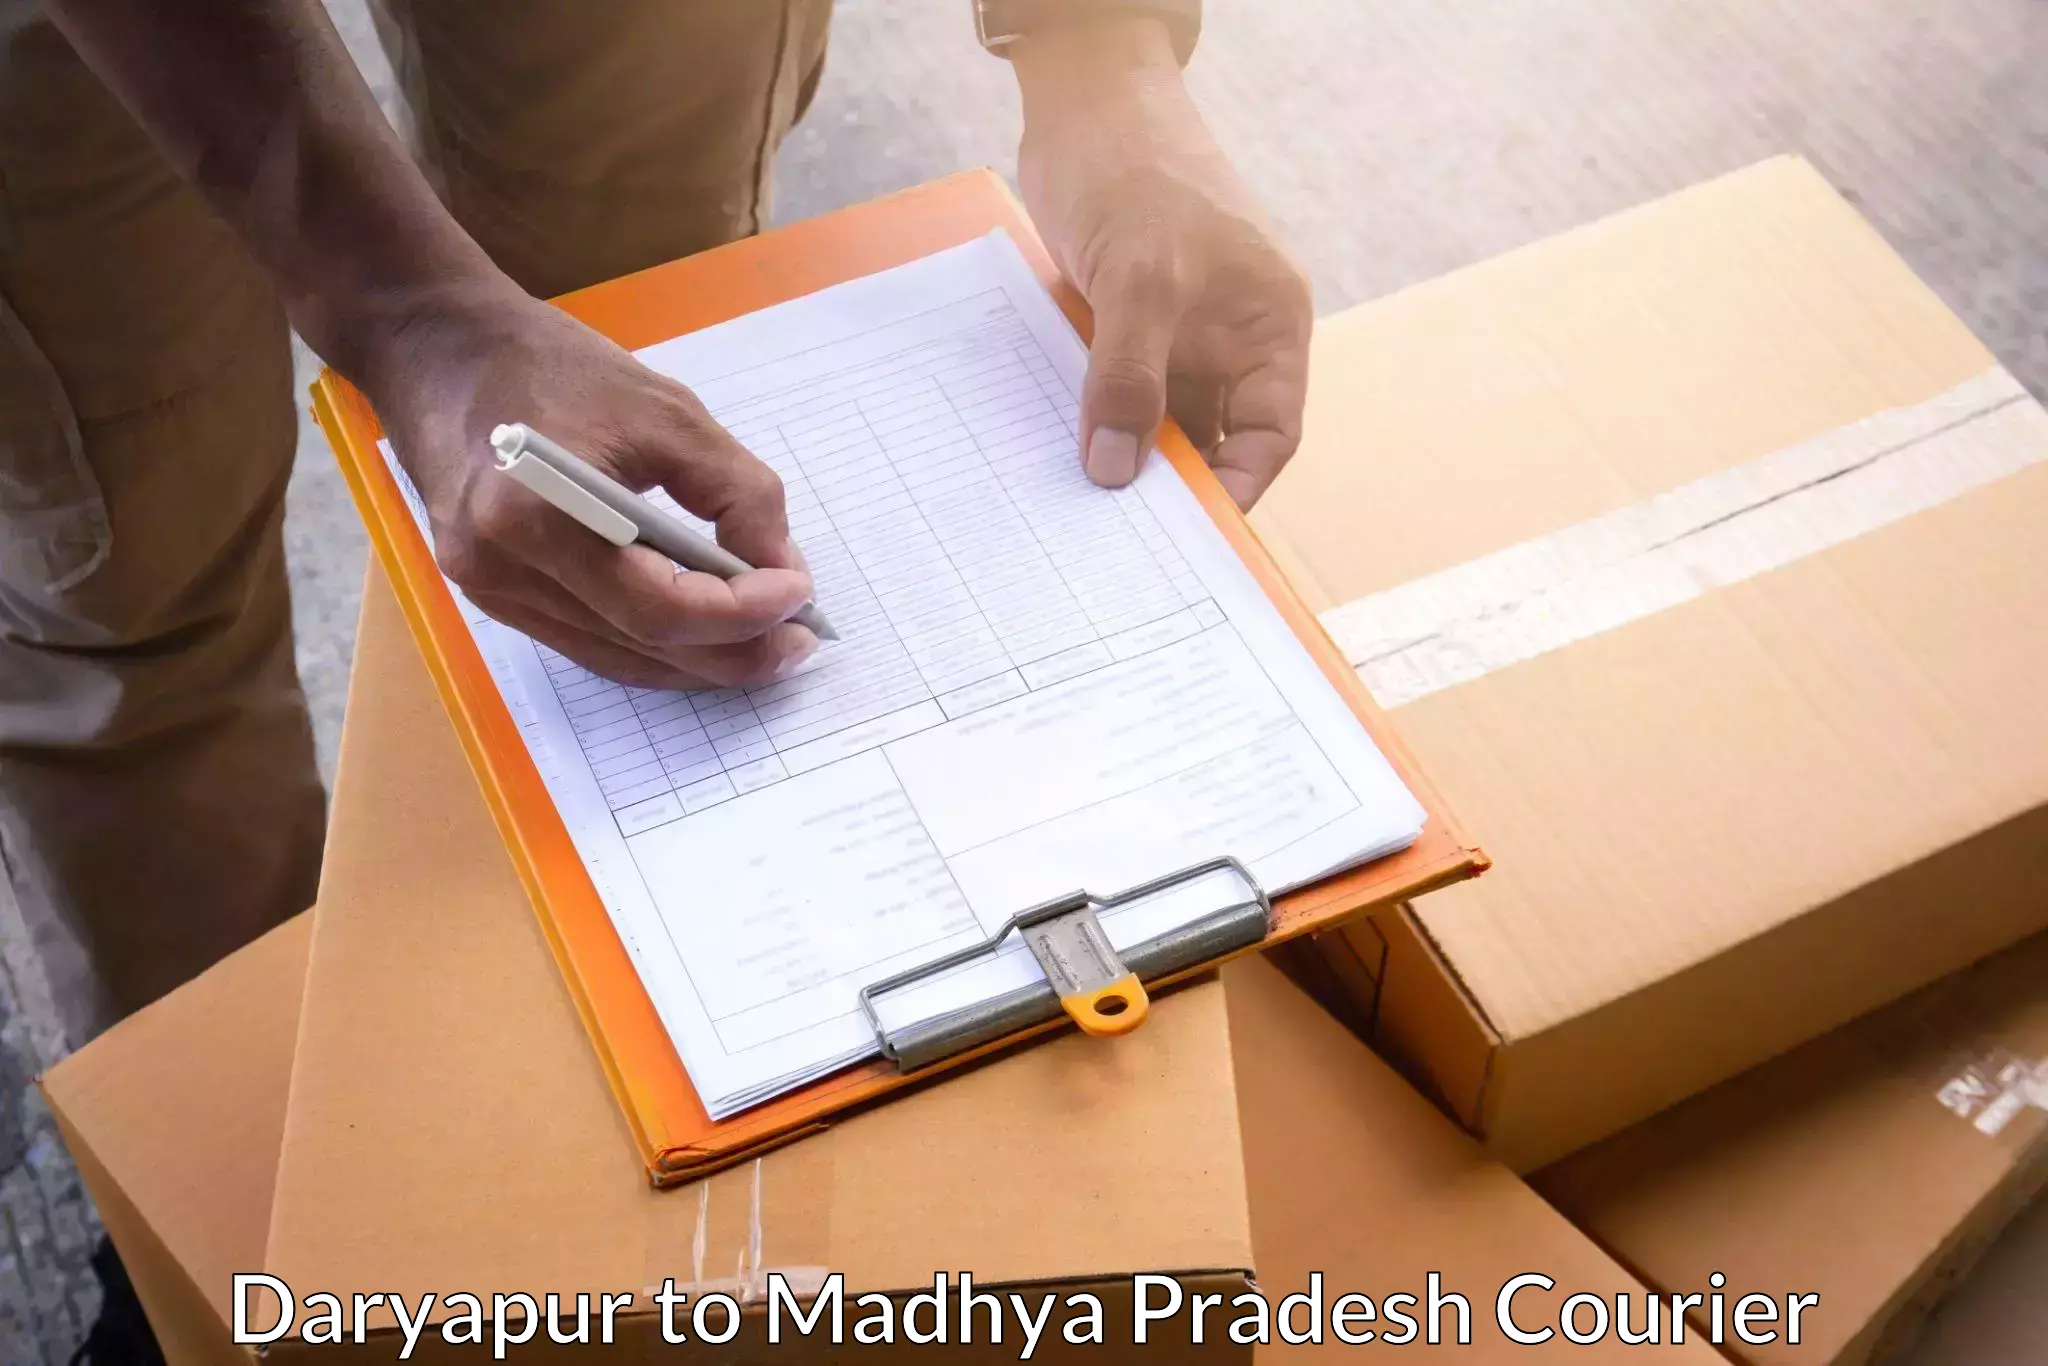 Personalized courier experiences Daryapur to Shahpura Dindori